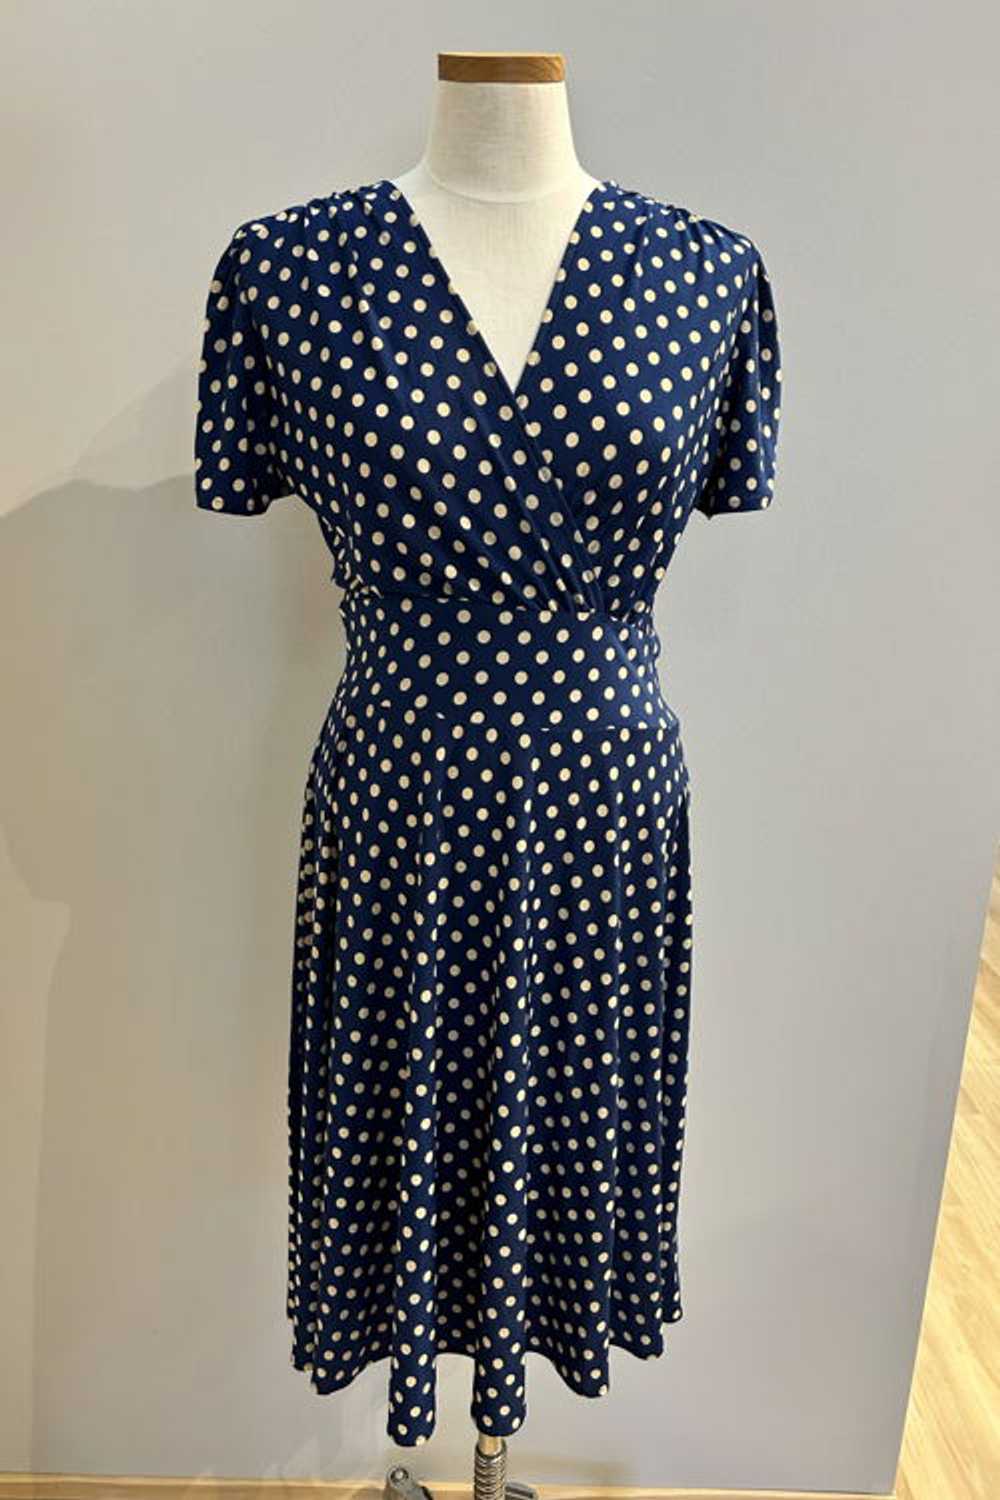 Karina Dresses Megan Navy with Taupe Polka Dots - image 1